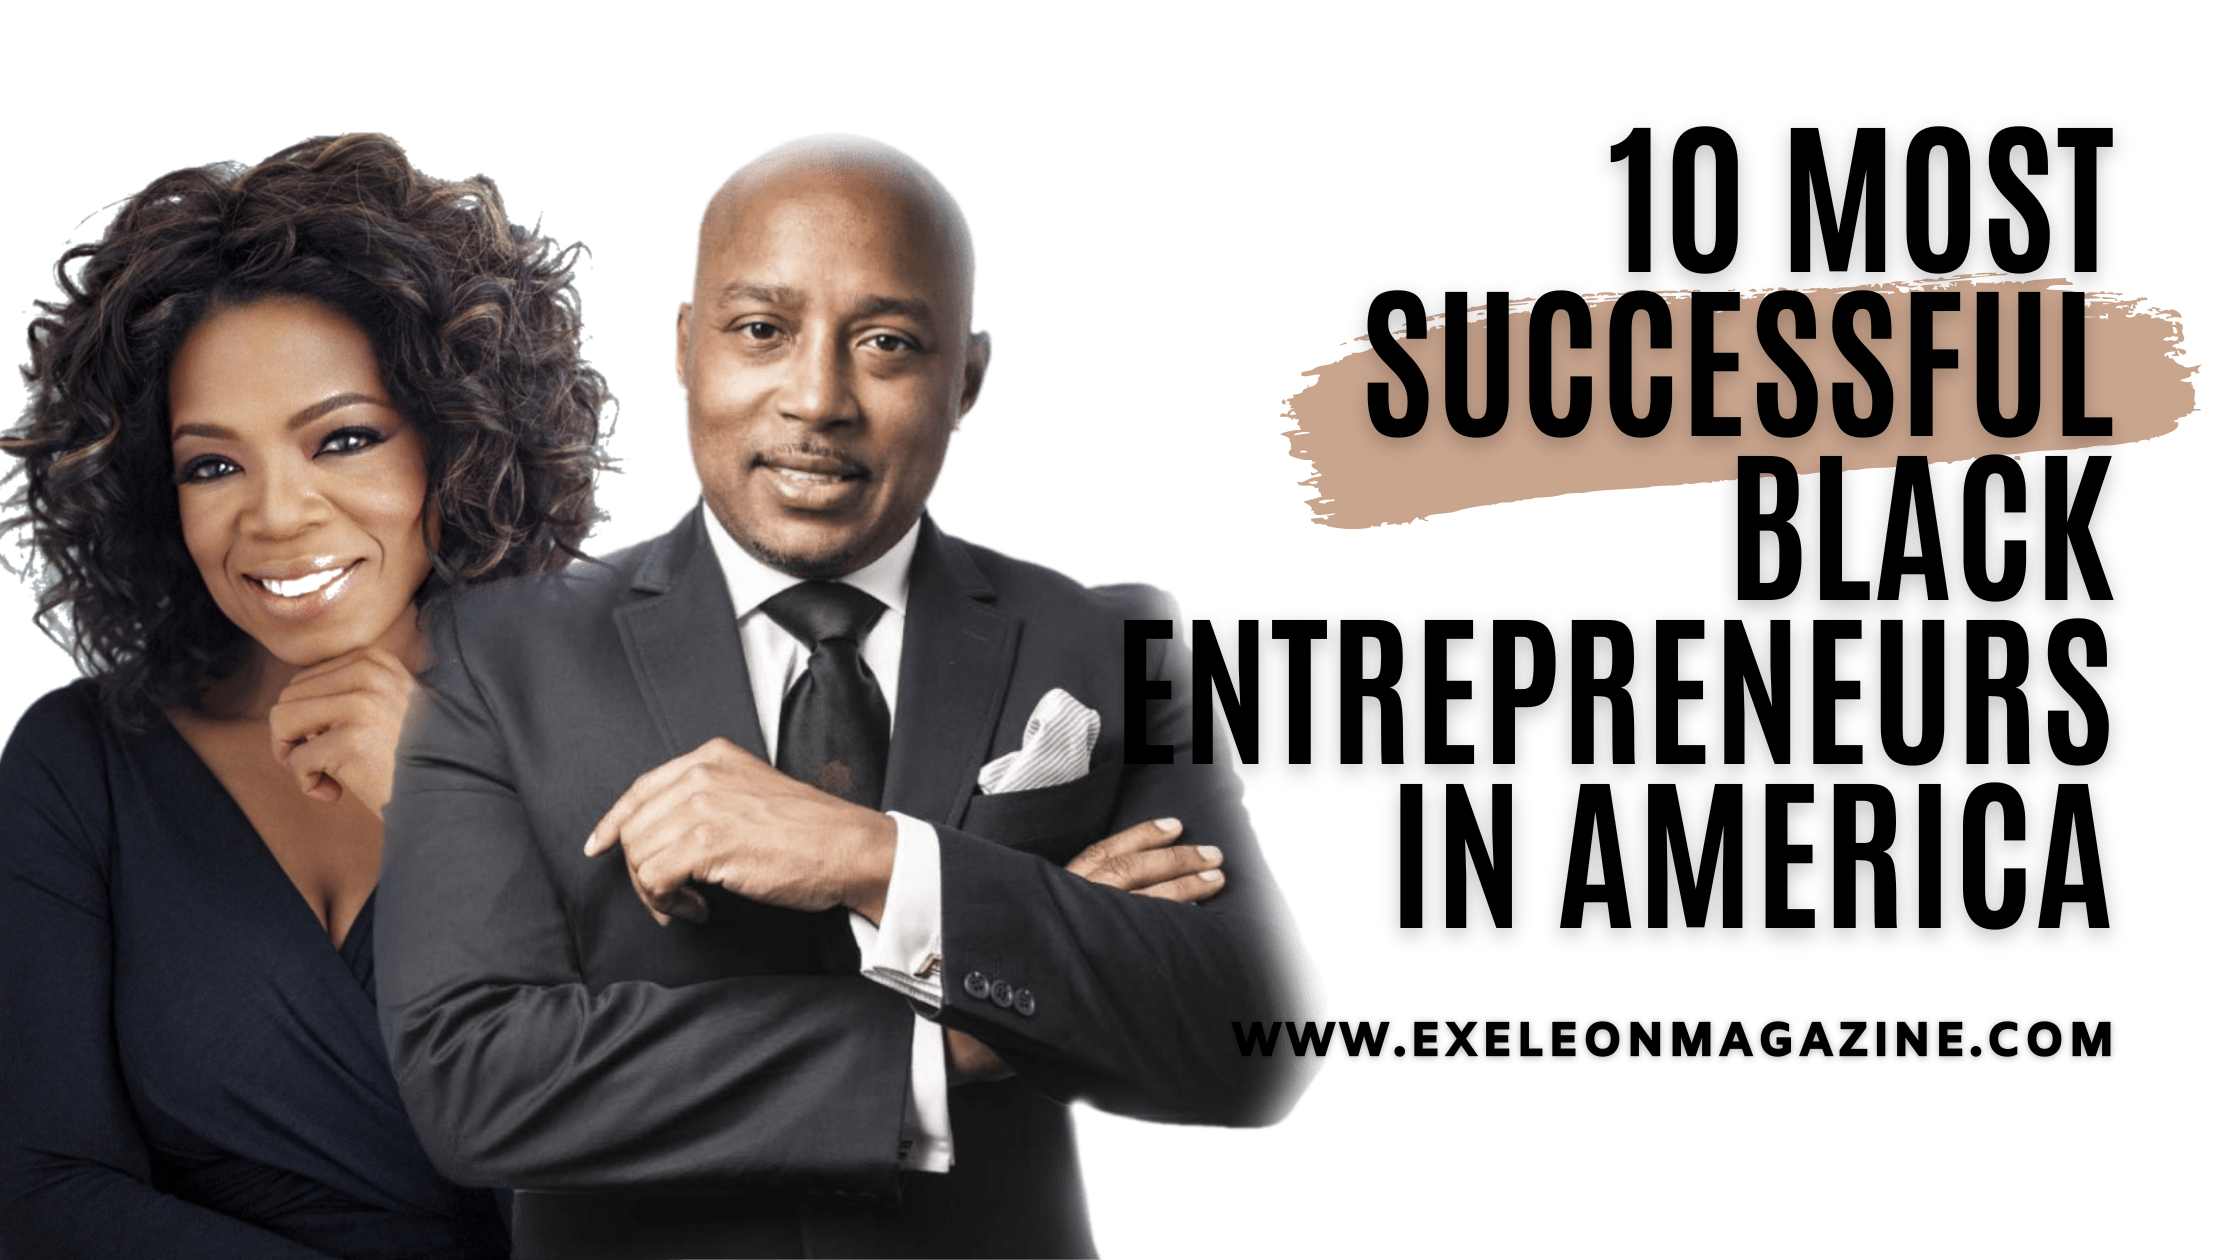 Black Entrepreneurs in America